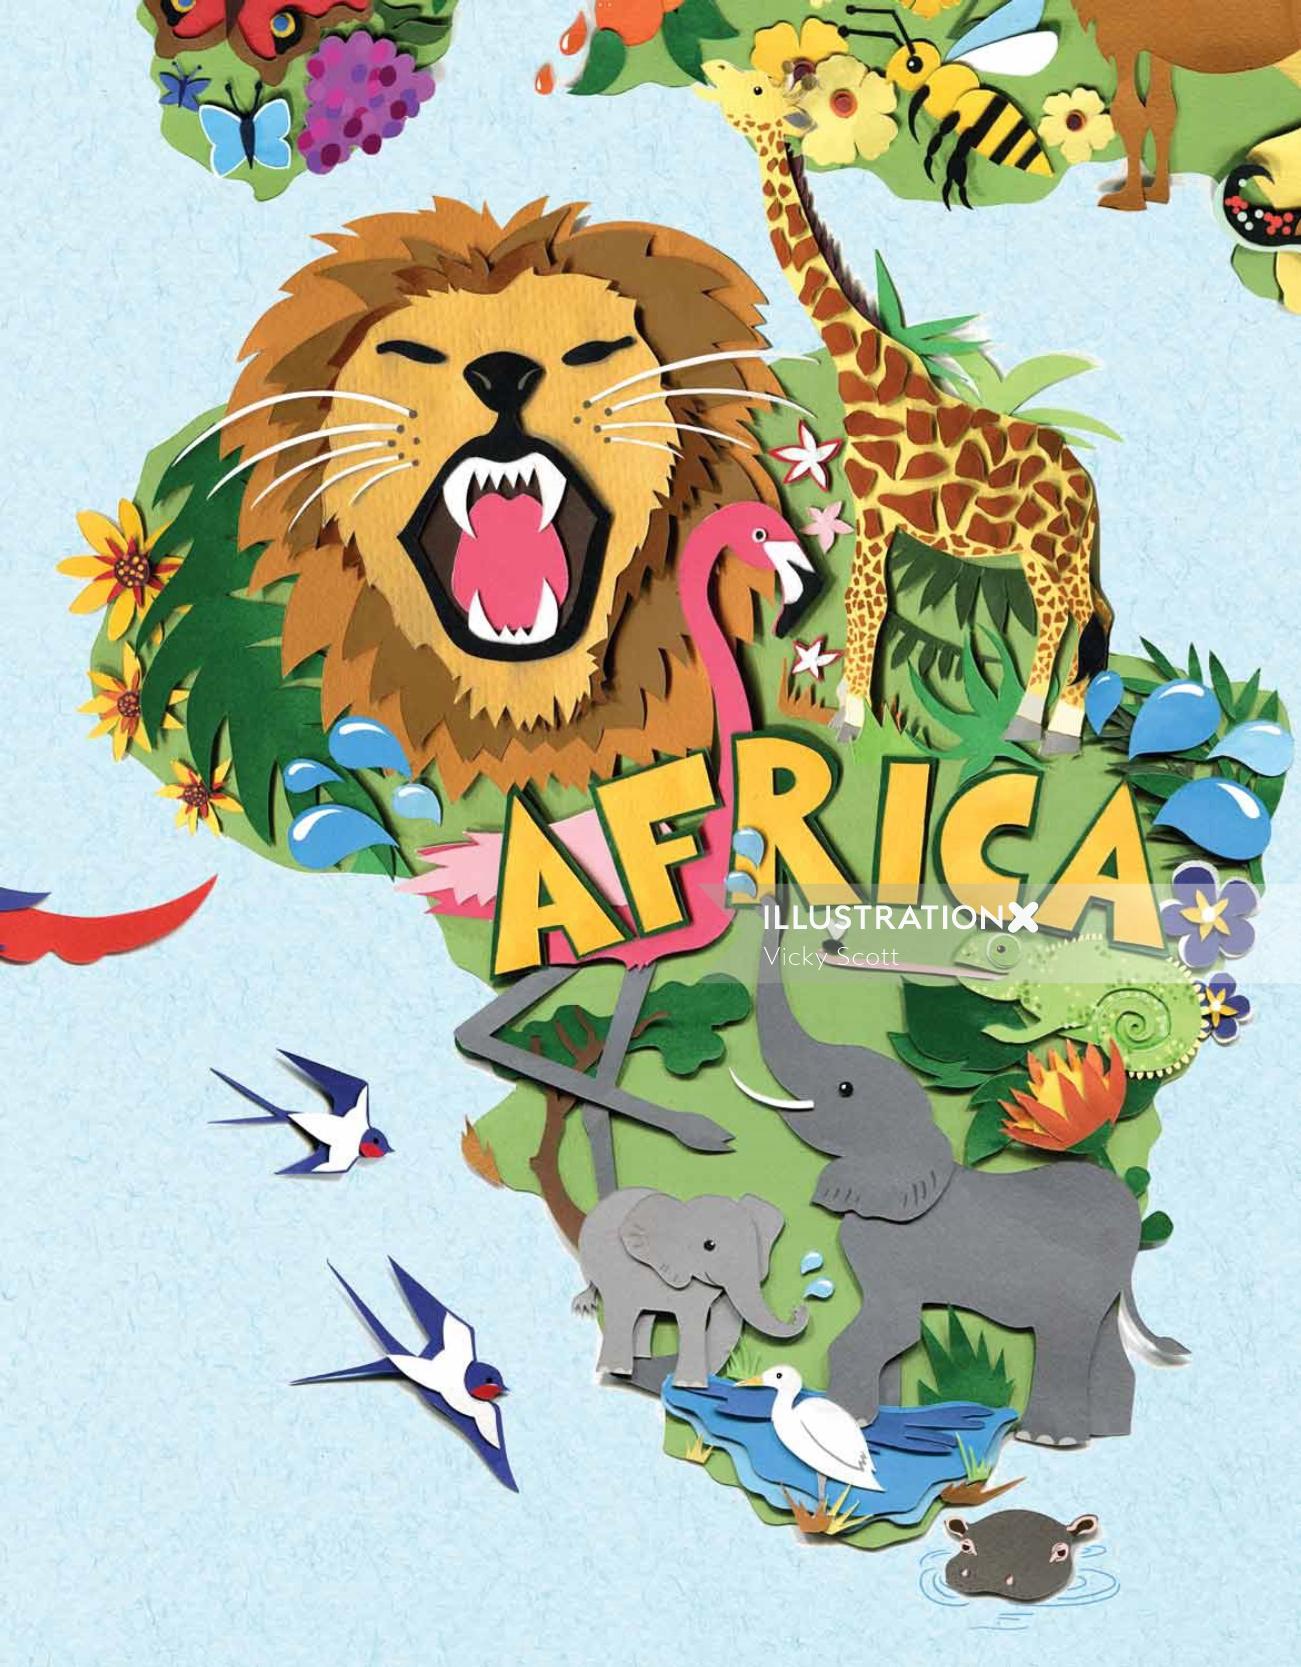 Wildlife of Africa mural for kids room